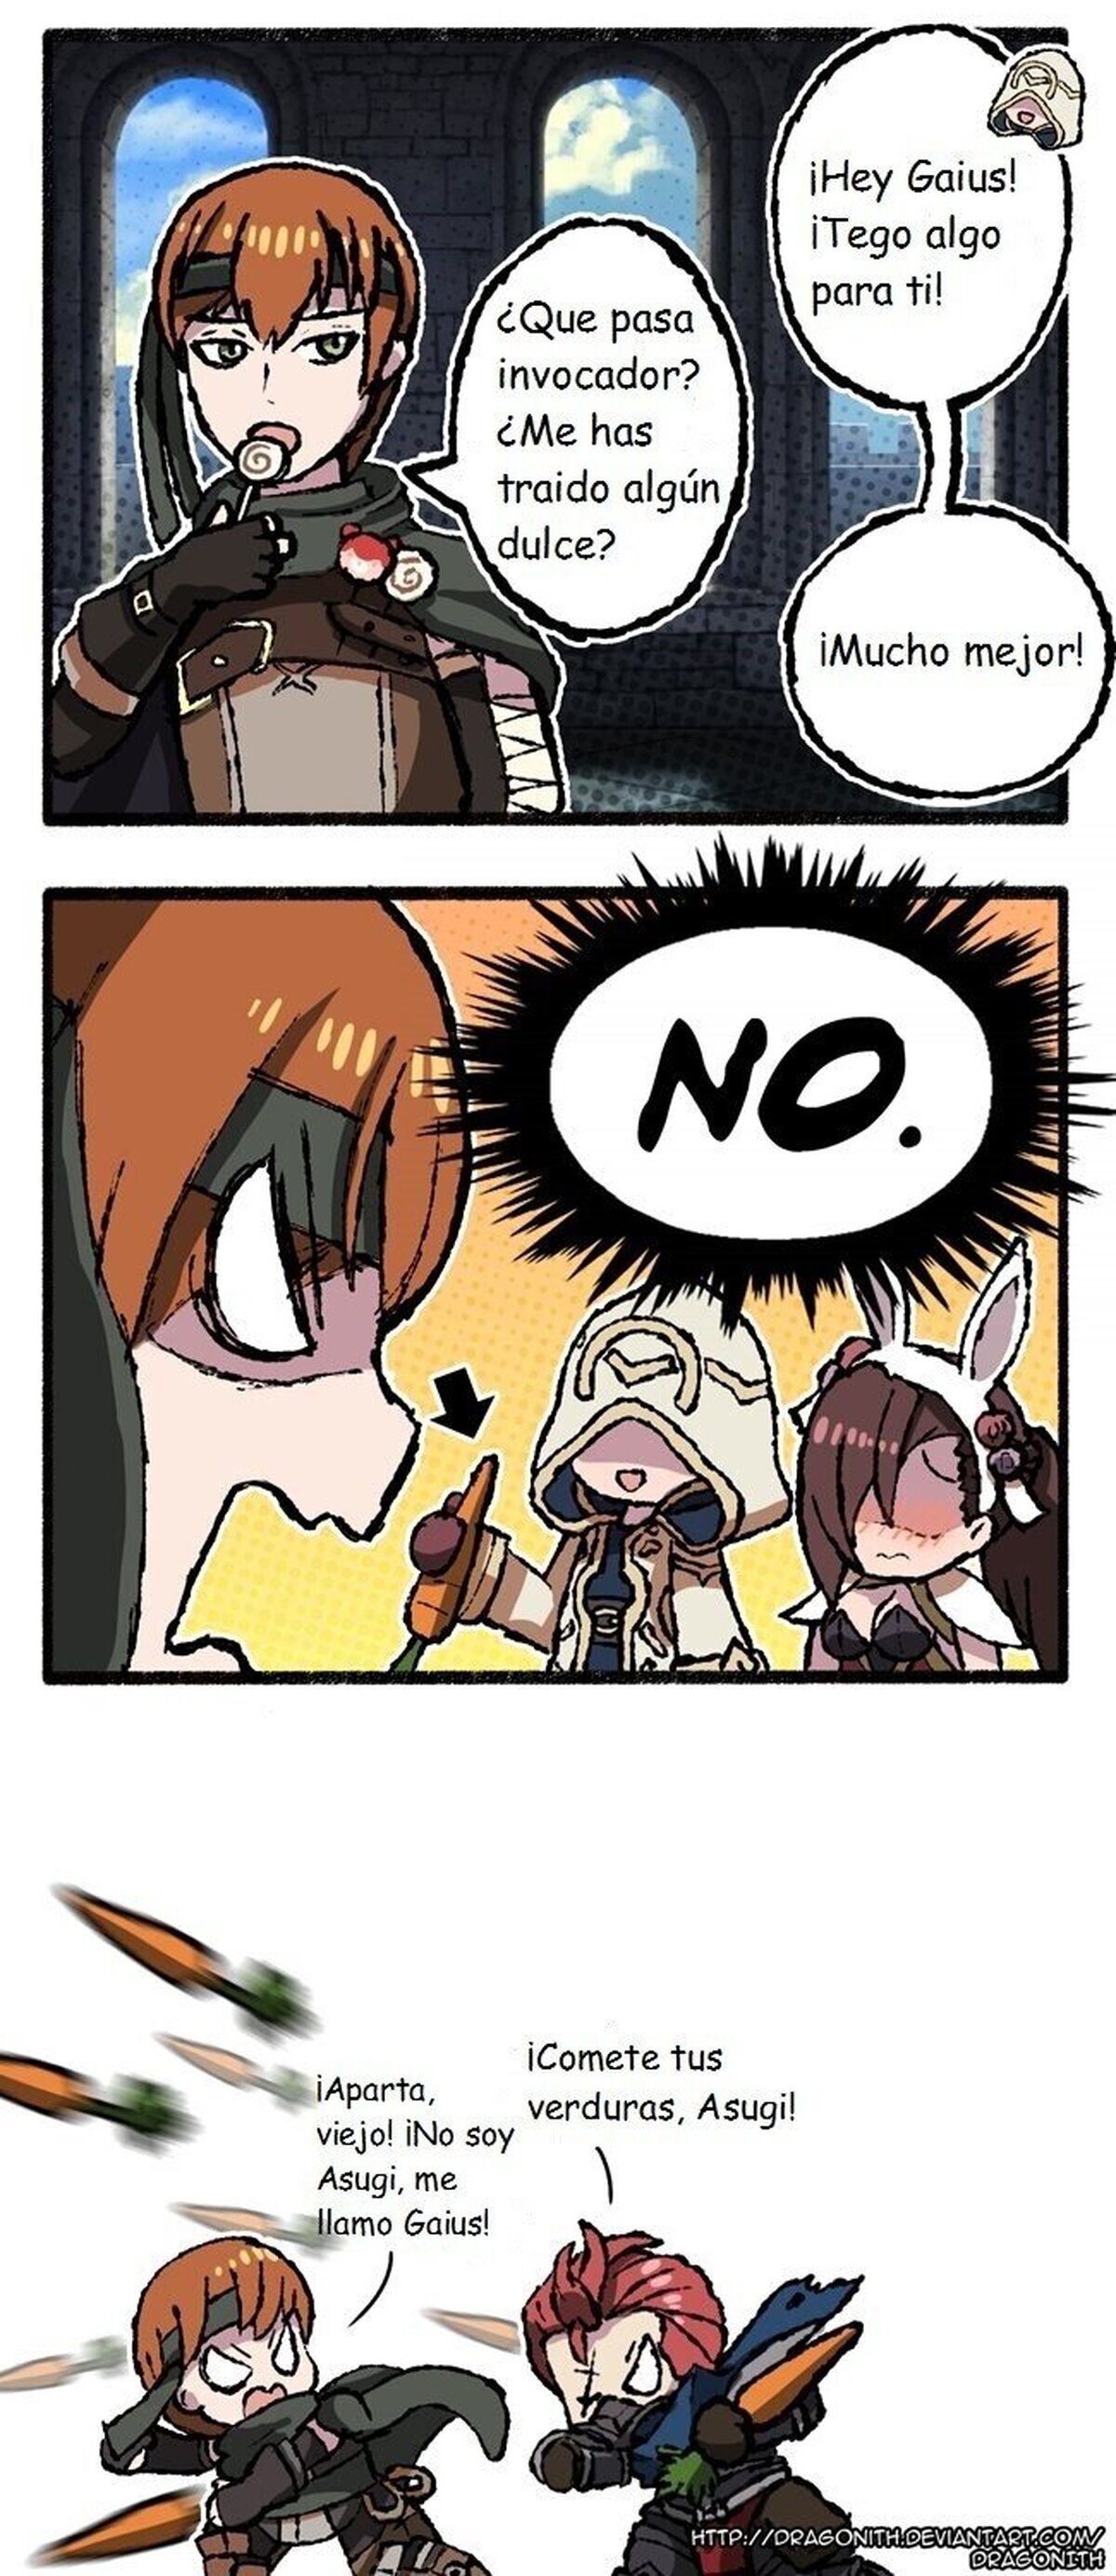 ¡El problema alimenticio de Gaius!